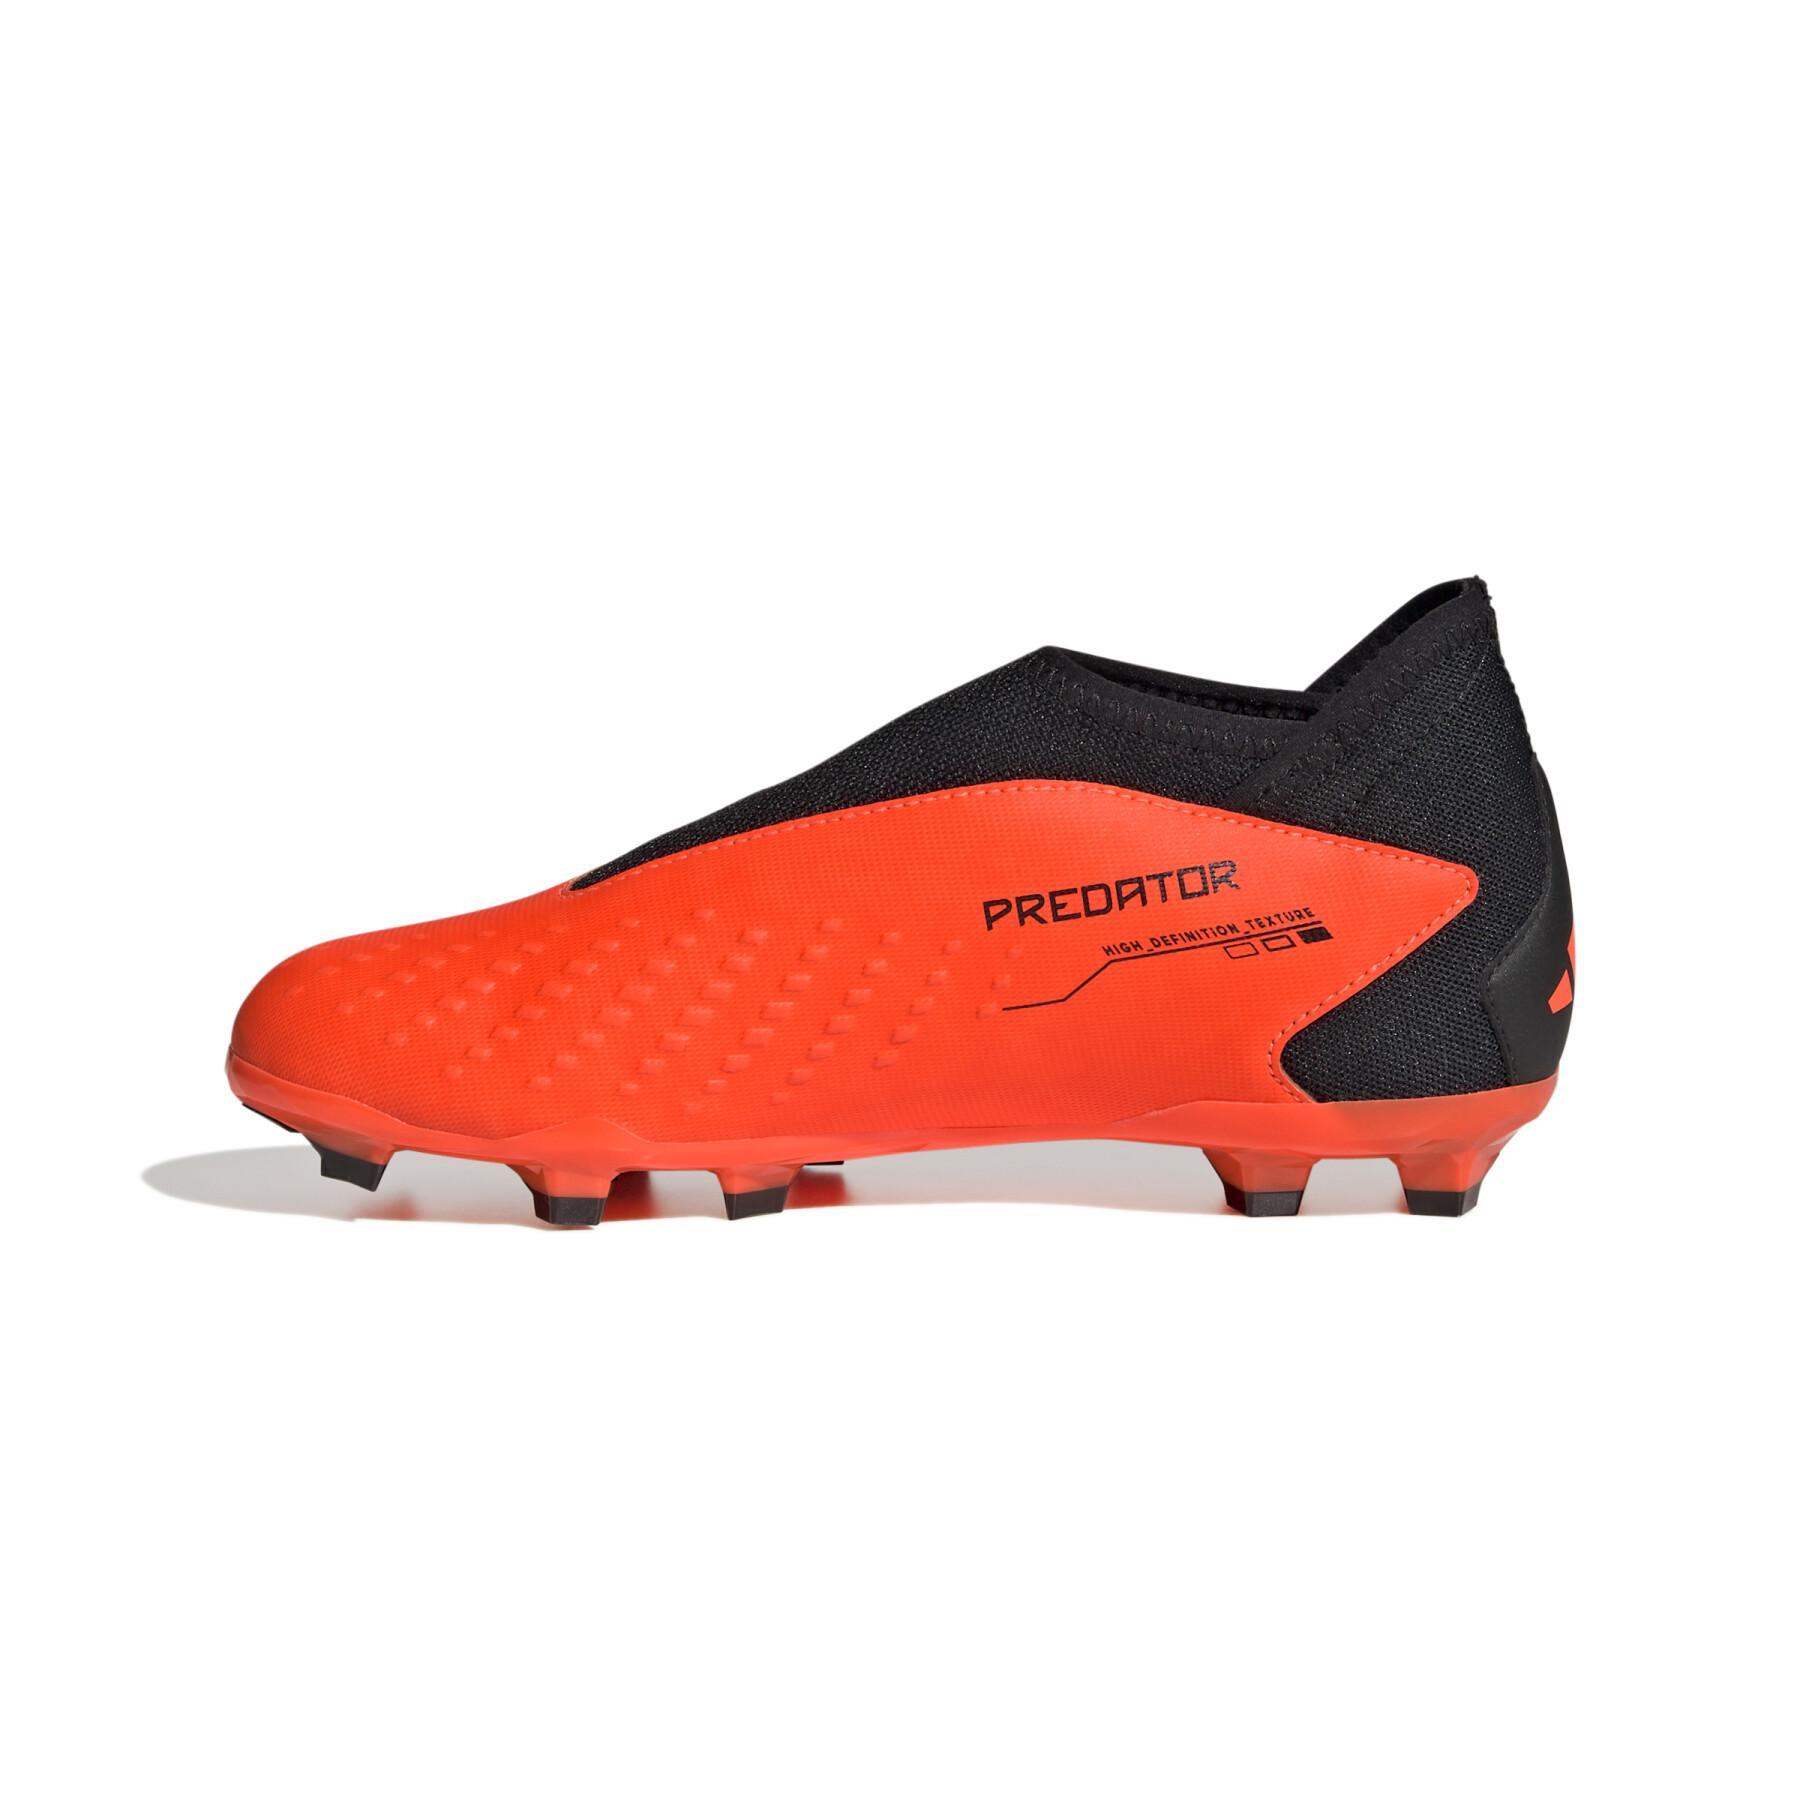 Vetvrije voetbalschoenen voor kinderen adidas Predator Accuracy.3 FG Heatspawn Pack